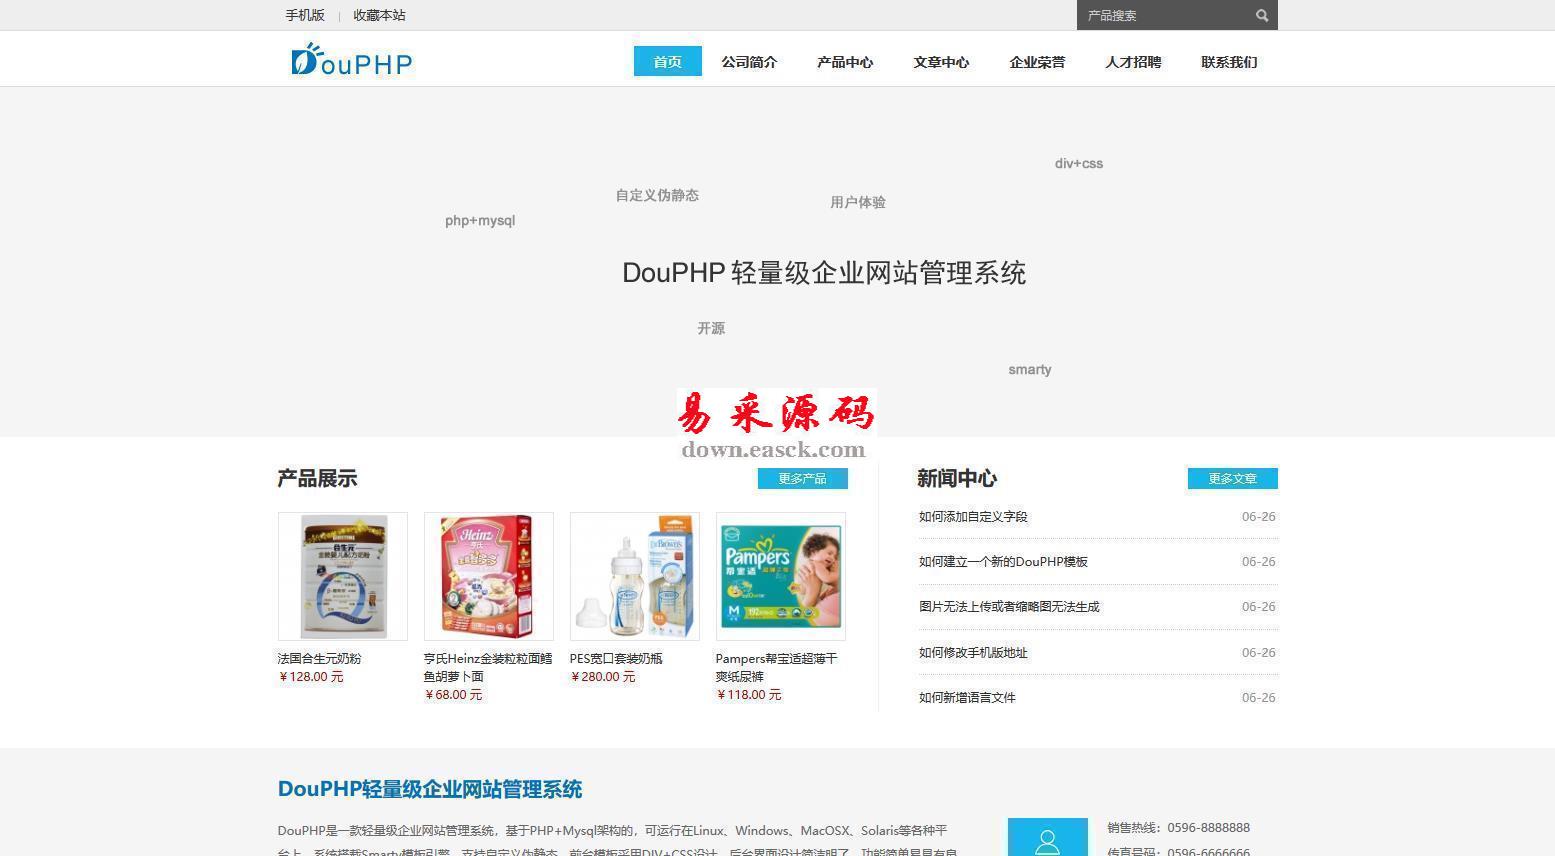 DouPHP轻量级企业网站管理系统(含小程序) v1.5 Release20190513